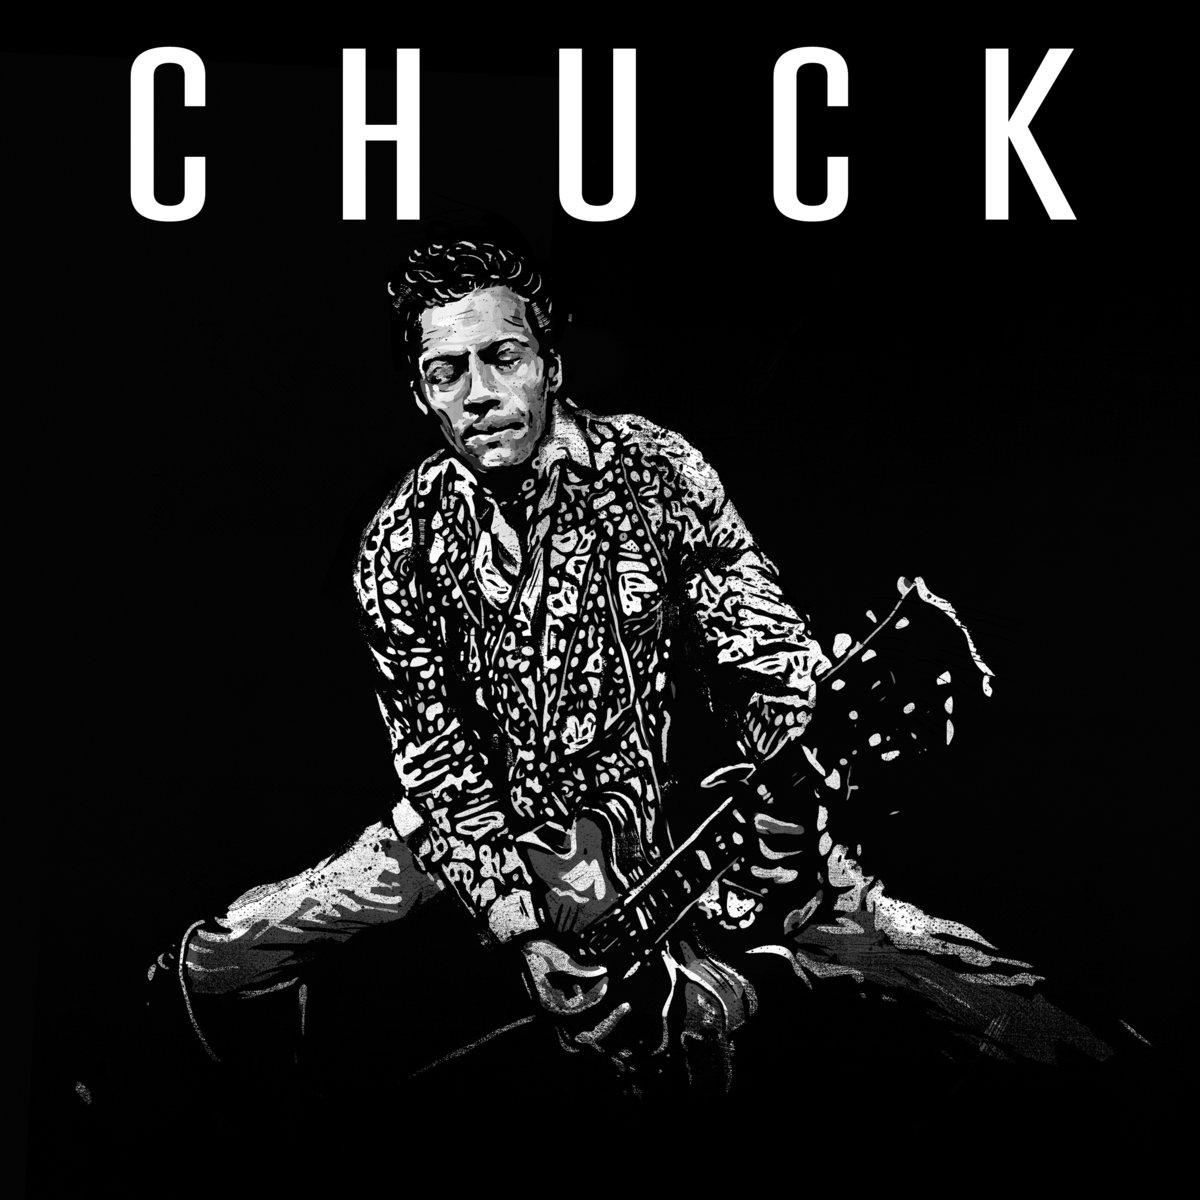 Финальный альбом Чака Берри "Chuck" выйдет в июне